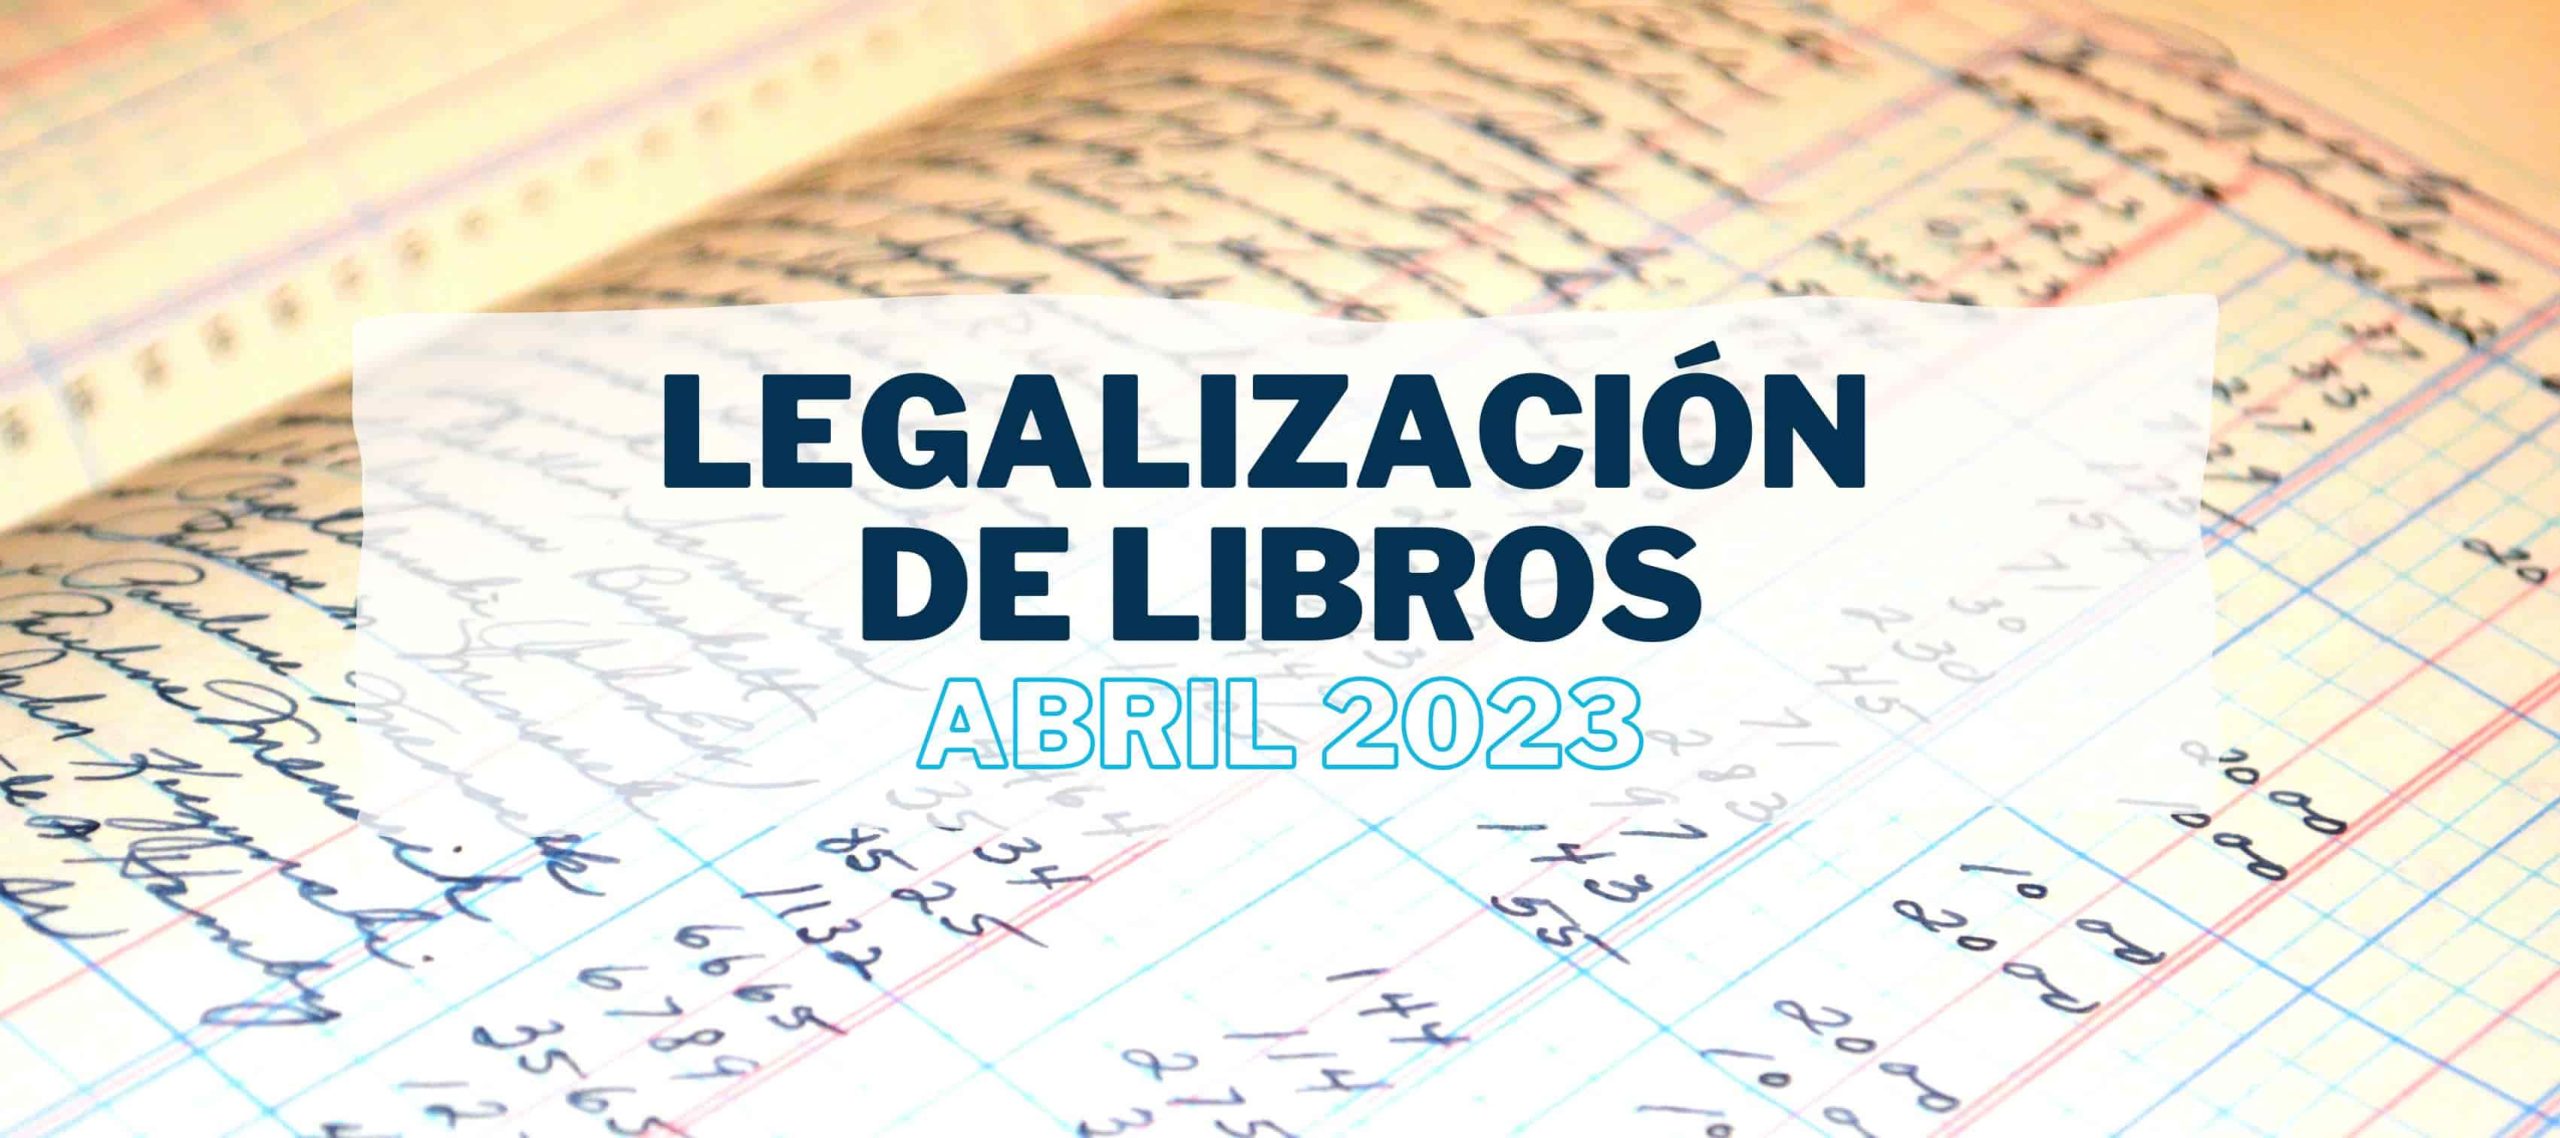 Consulta de libro contable abierto con apuntes tras leer el artículo sobre la legislación de libros por parte de Iniciativa Fiscal.